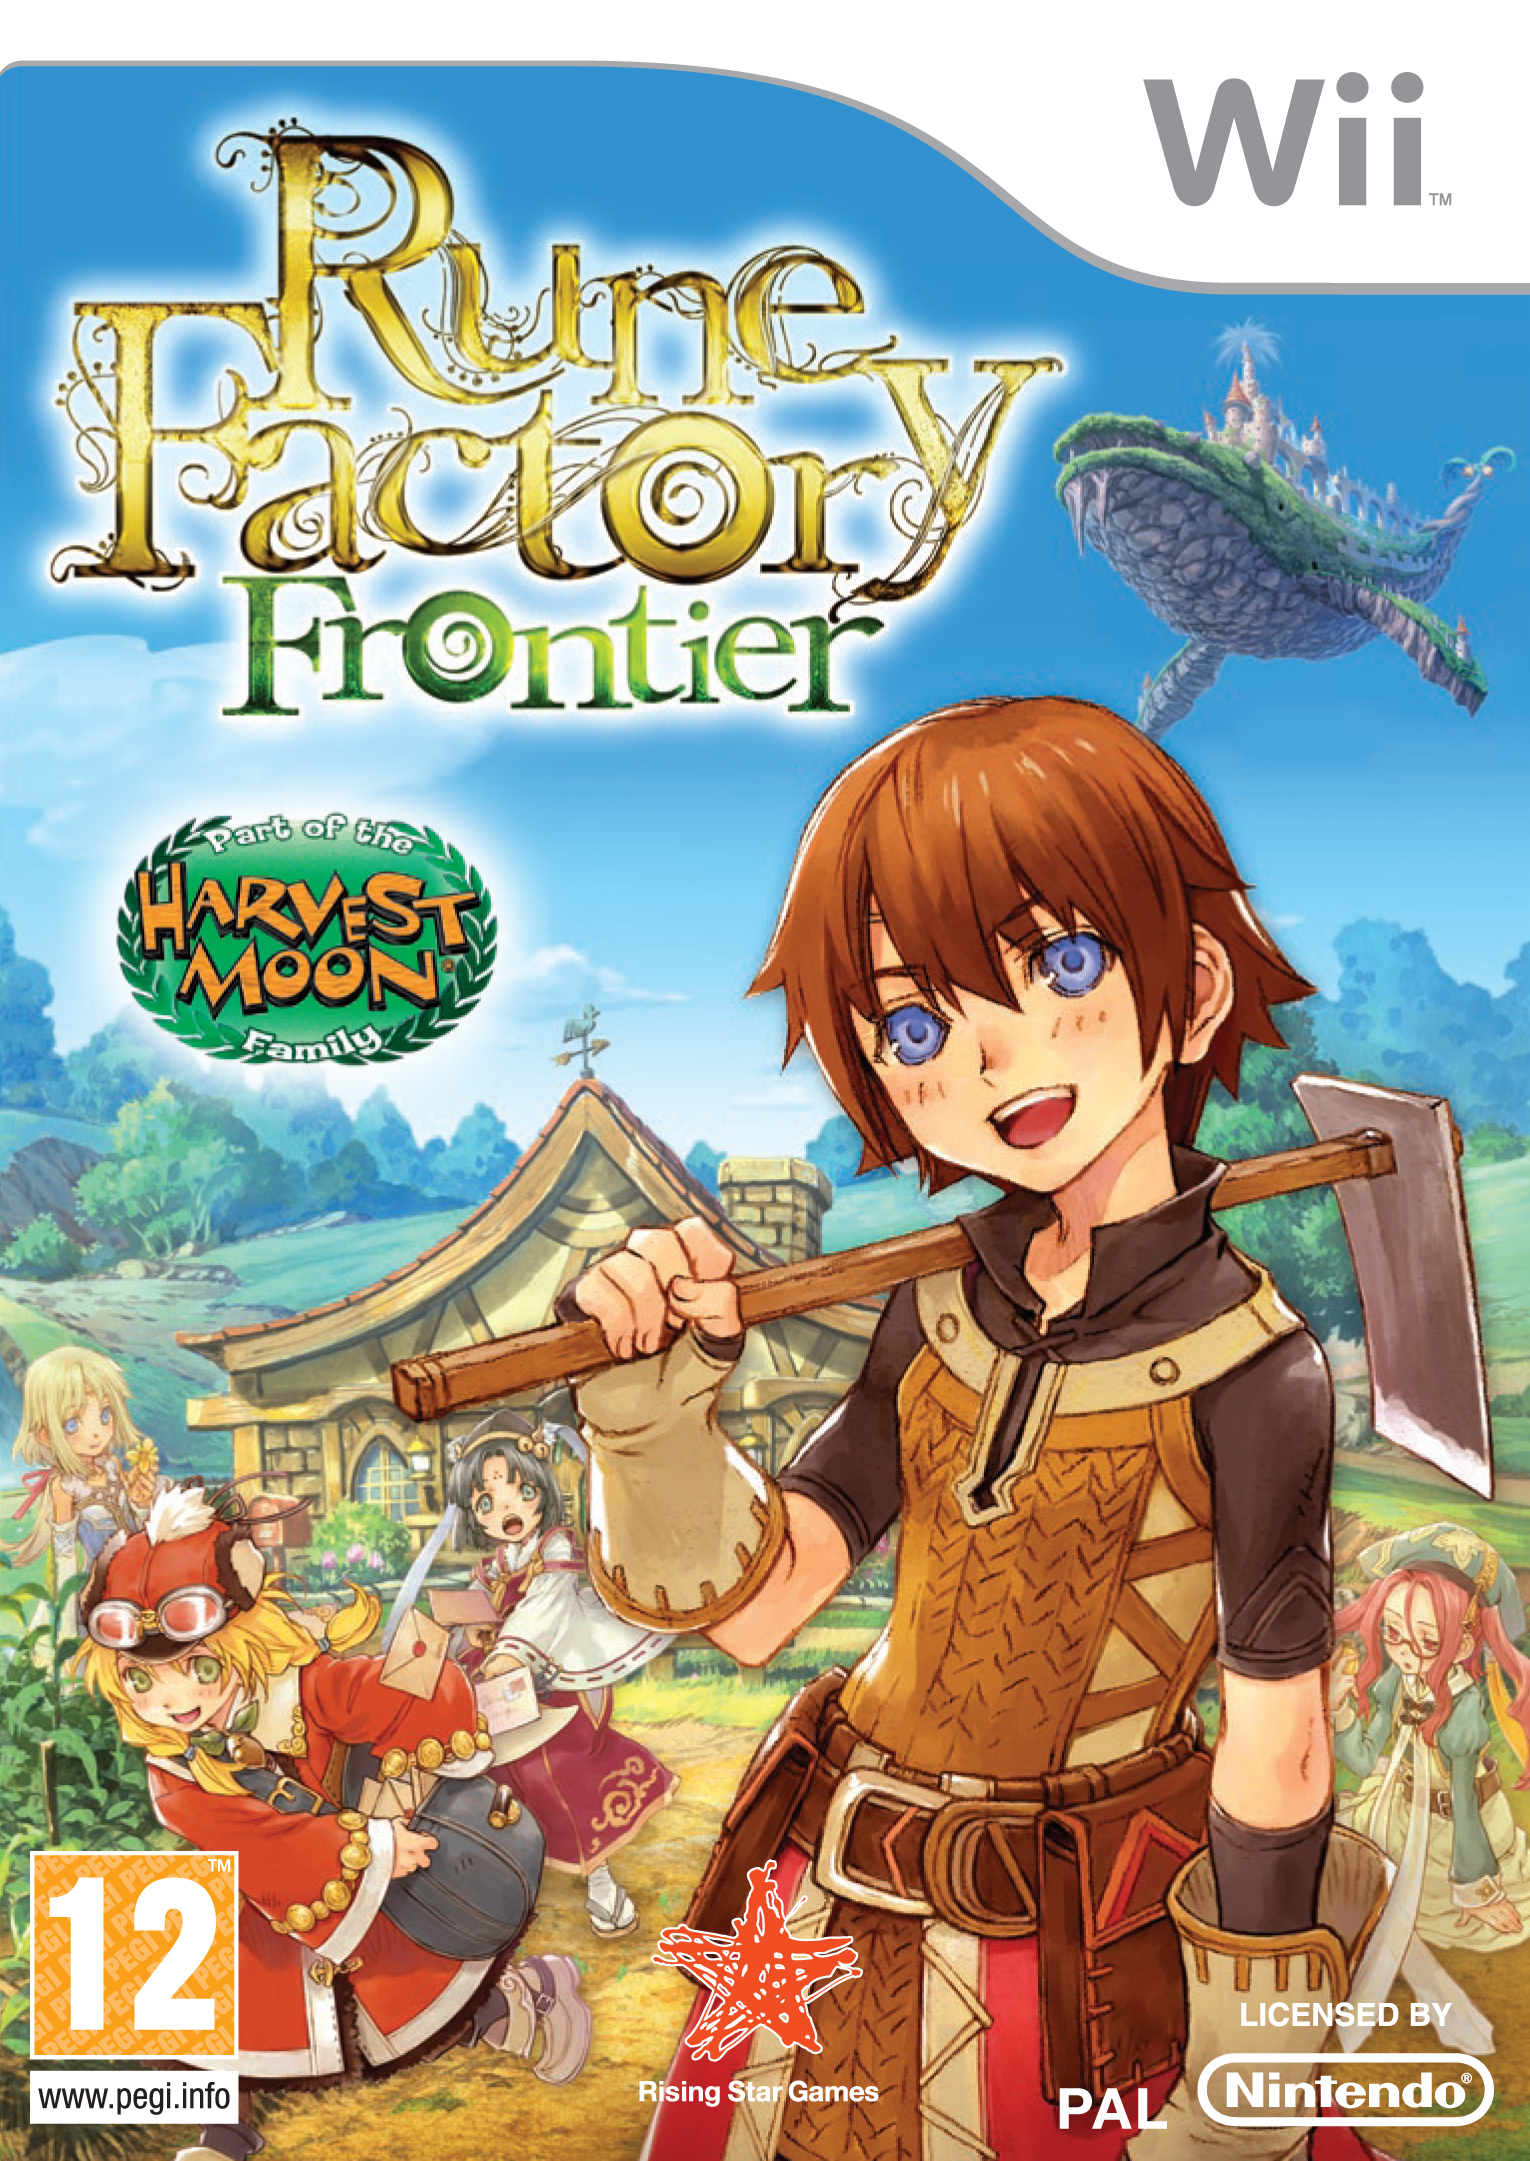 Rune Factory Frontier